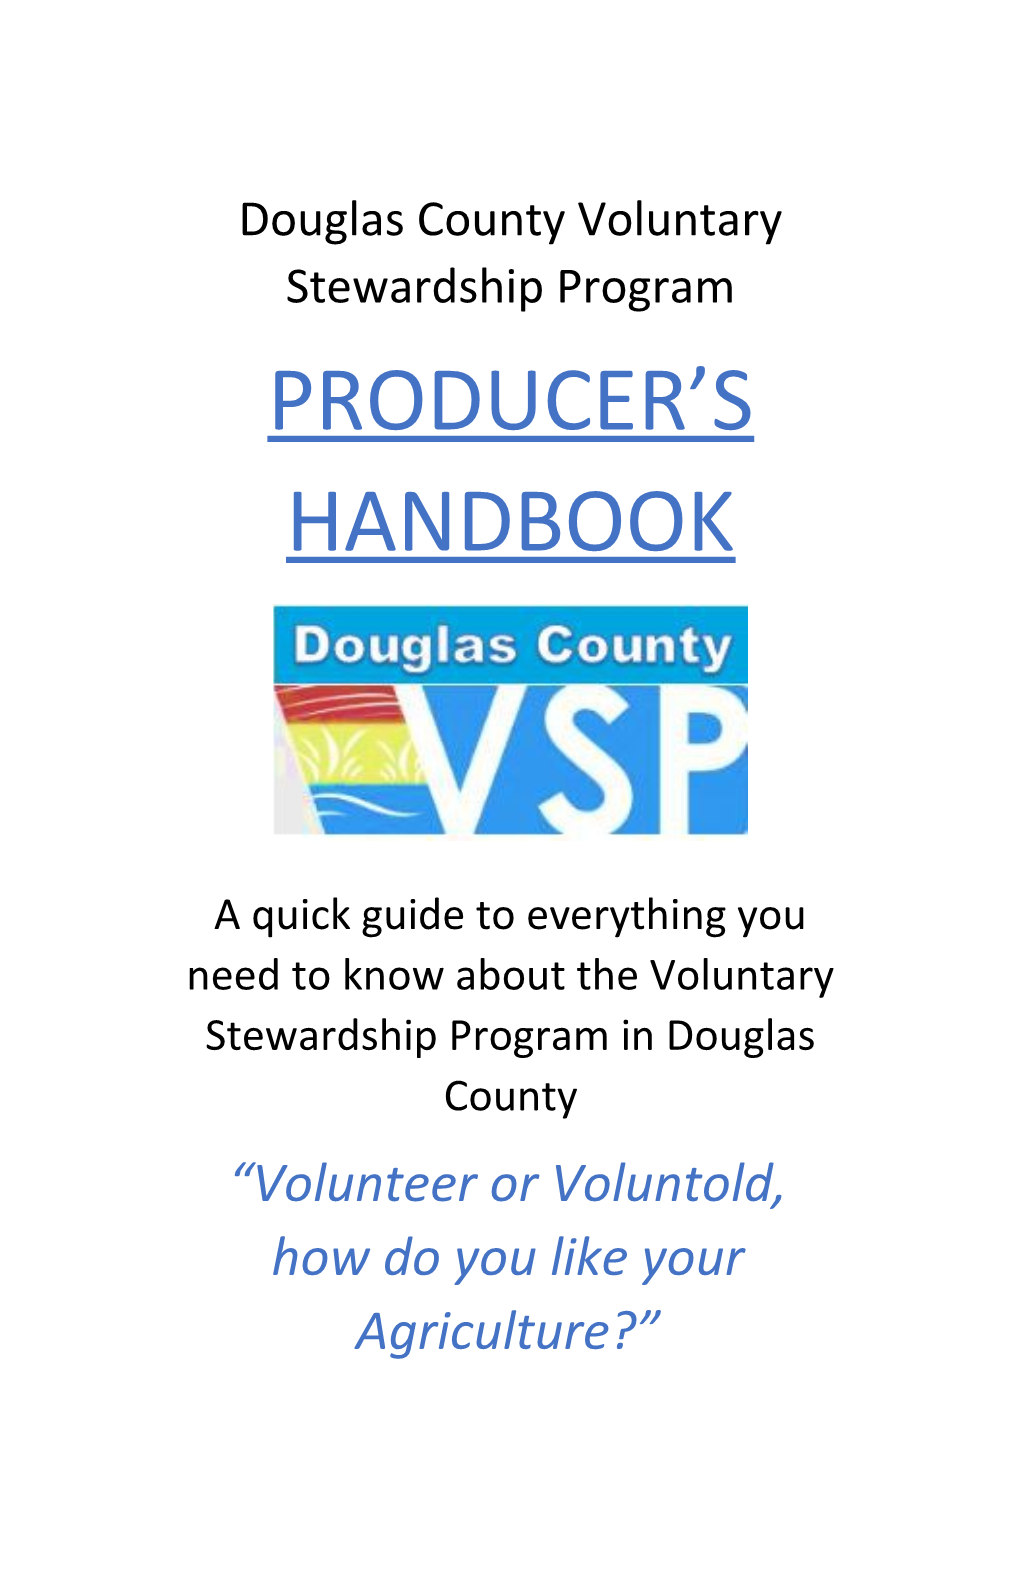 Douglas County Voluntary Stewardship Program